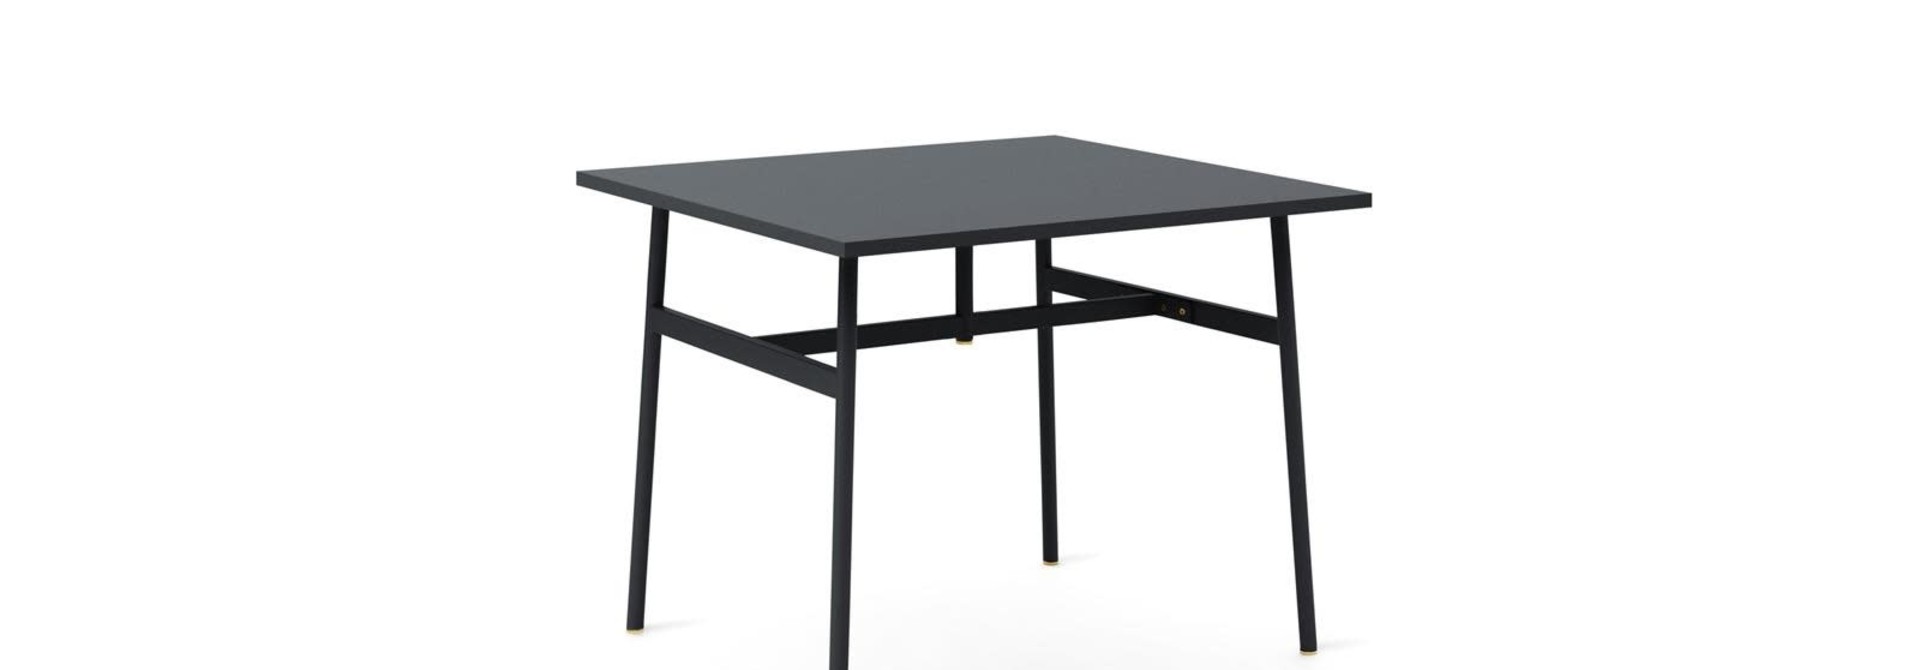 Union Table 90x90 cm